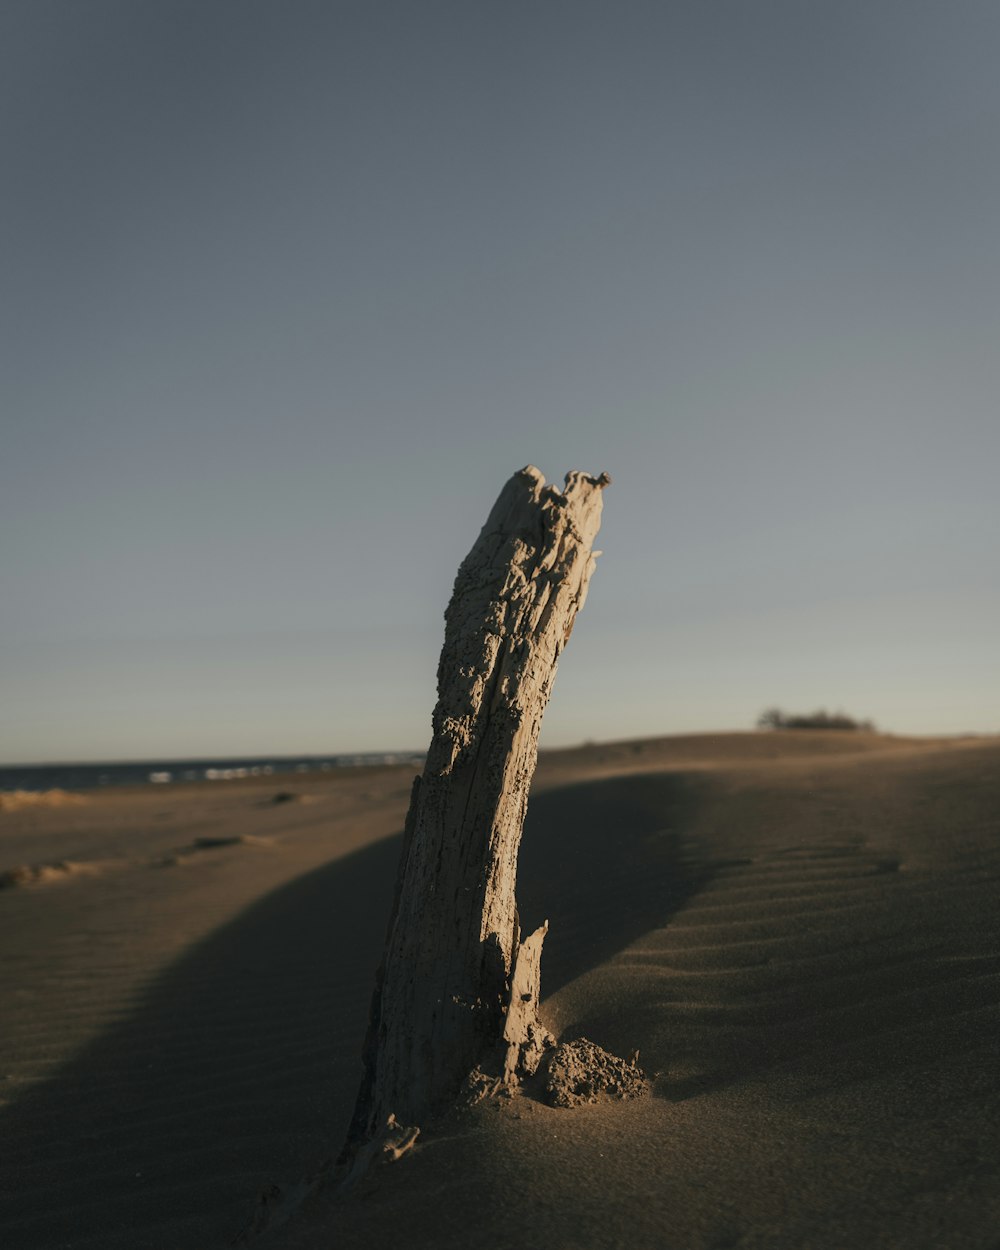 brown log on desert during daytime